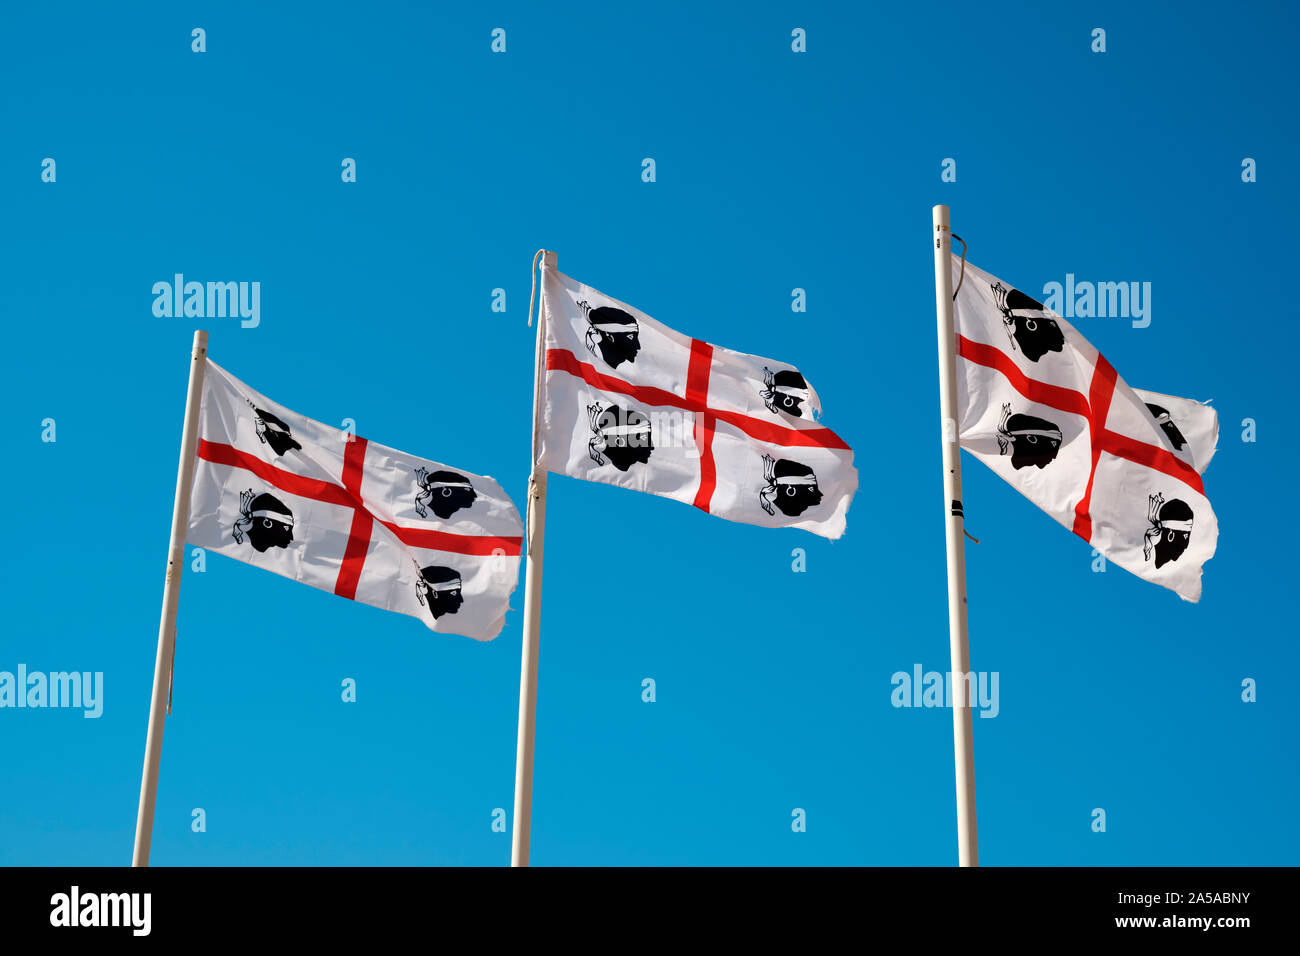 Die Flagge von Sardinien und Korsika, vier Mauren Fahne / Flagge der vier Mauren fliegen in einem klaren, blauen Himmel Stockfoto